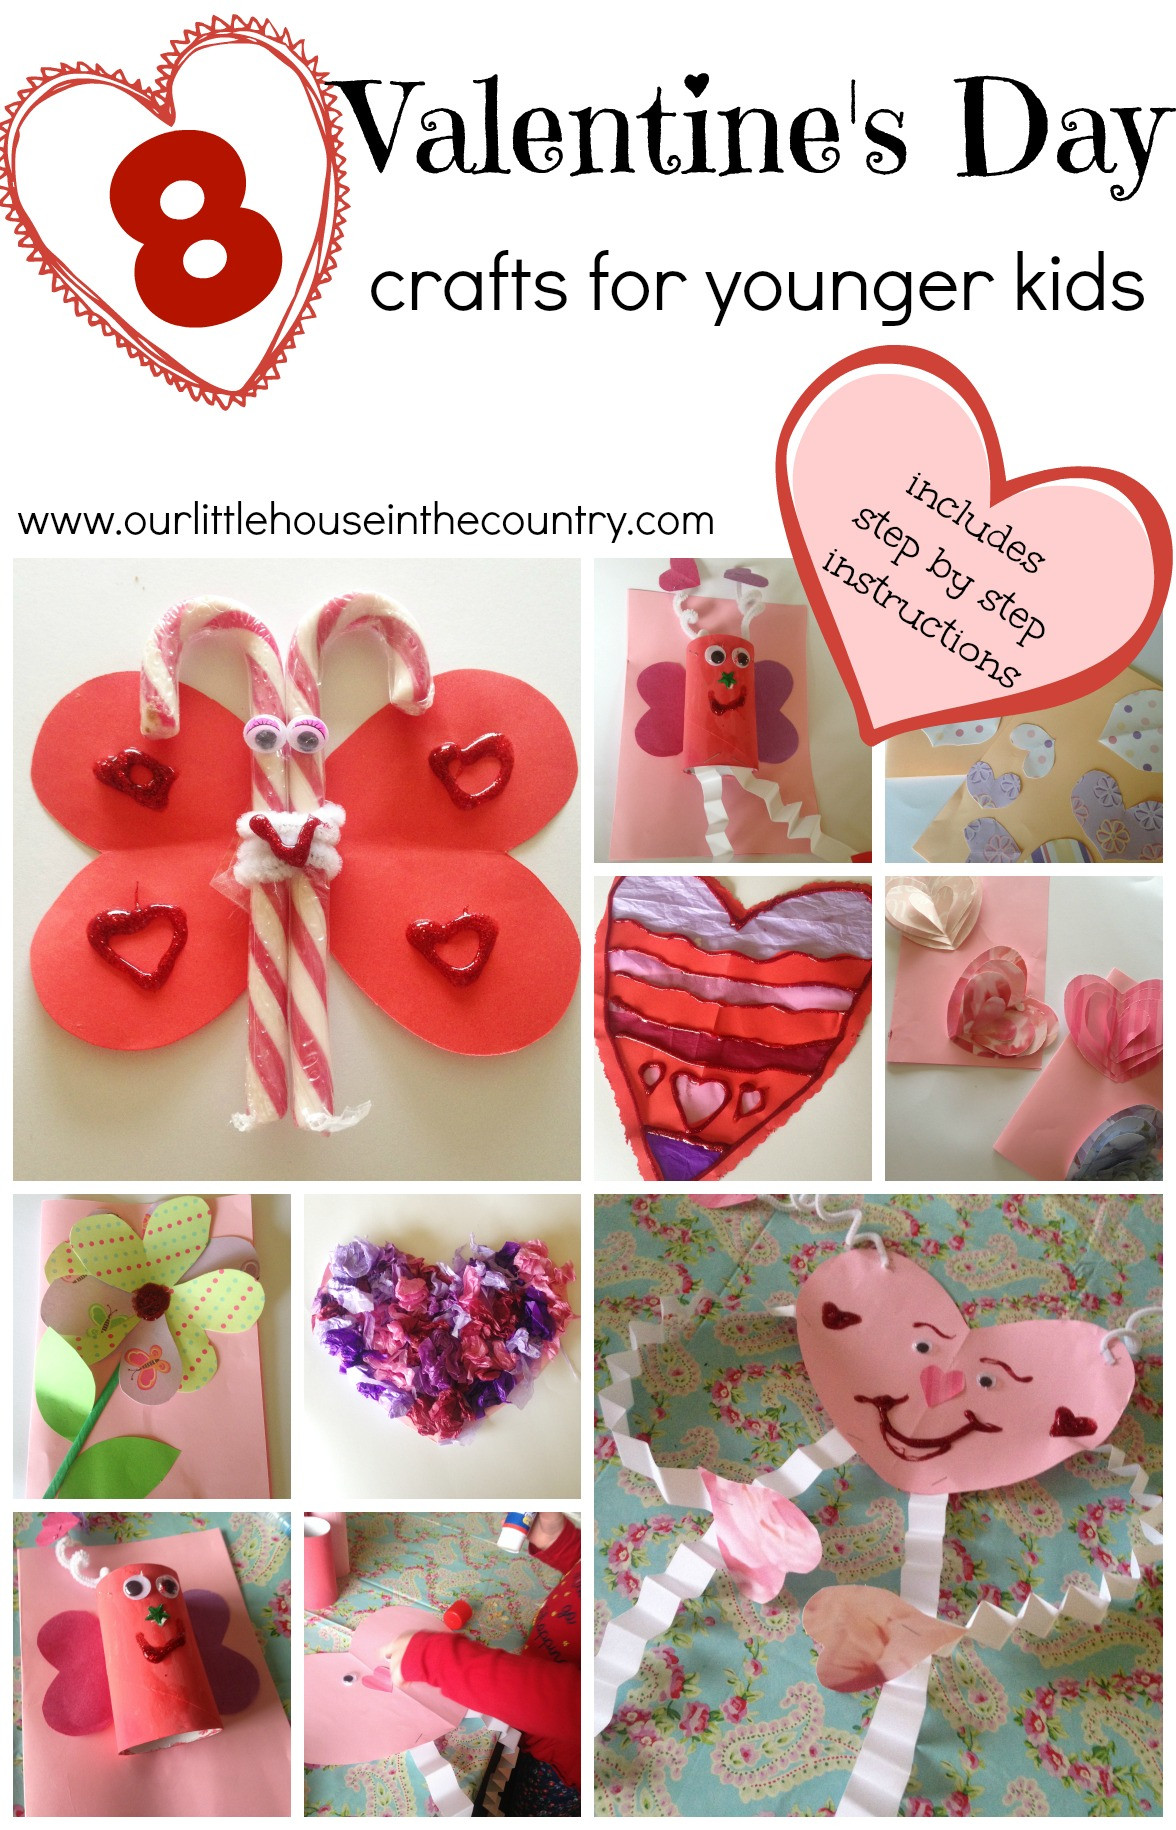 Preschool Valentines Craft Ideas
 Valentine’s Day Crafts for Younger Children Preschool and